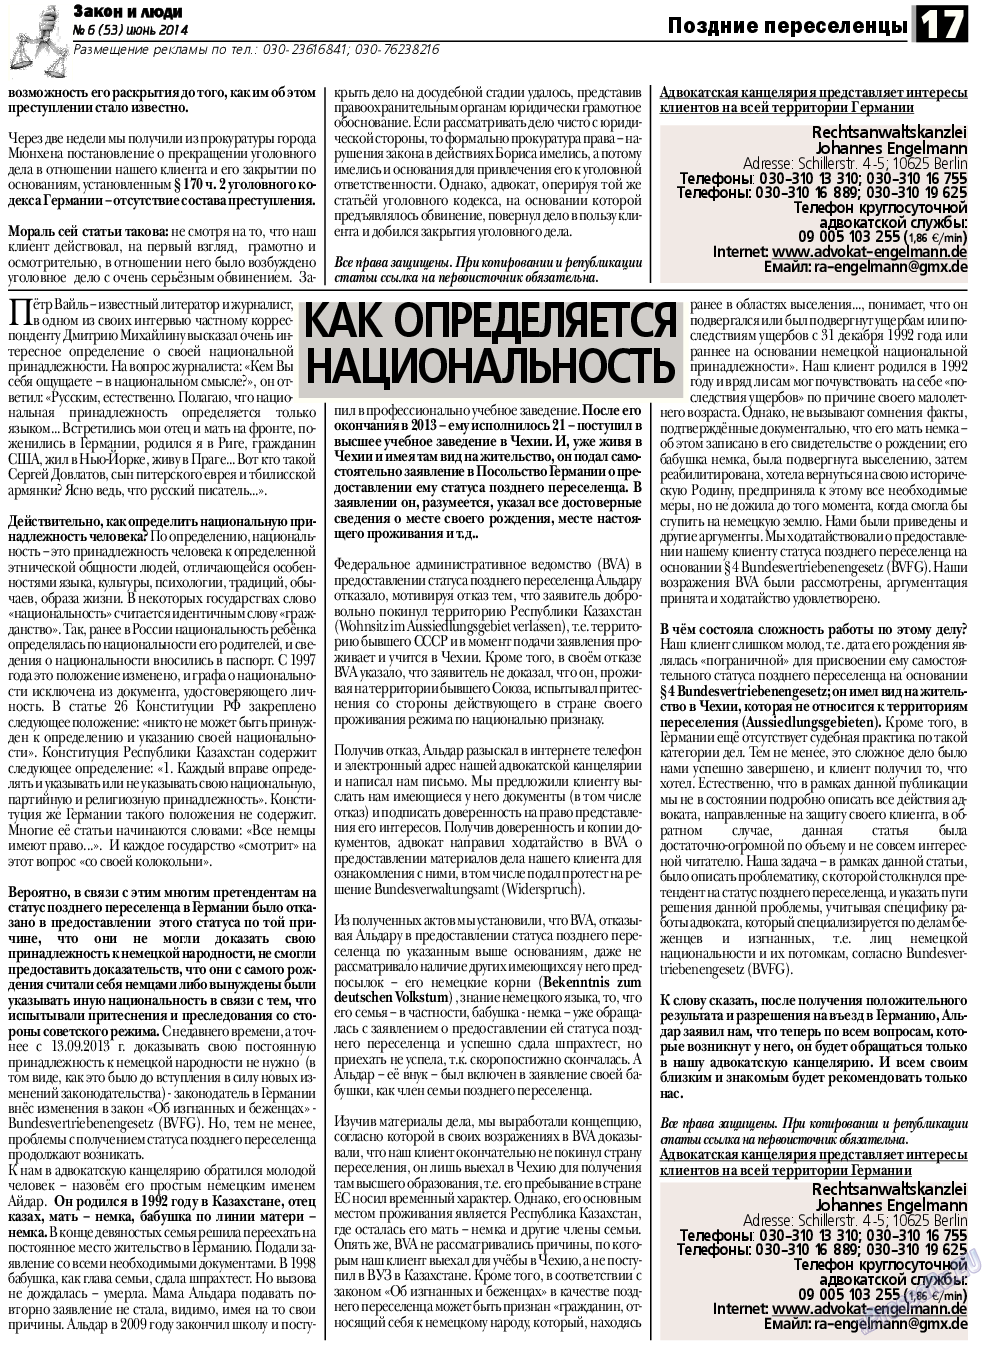 Закон и люди, газета. 2014 №6 стр.17